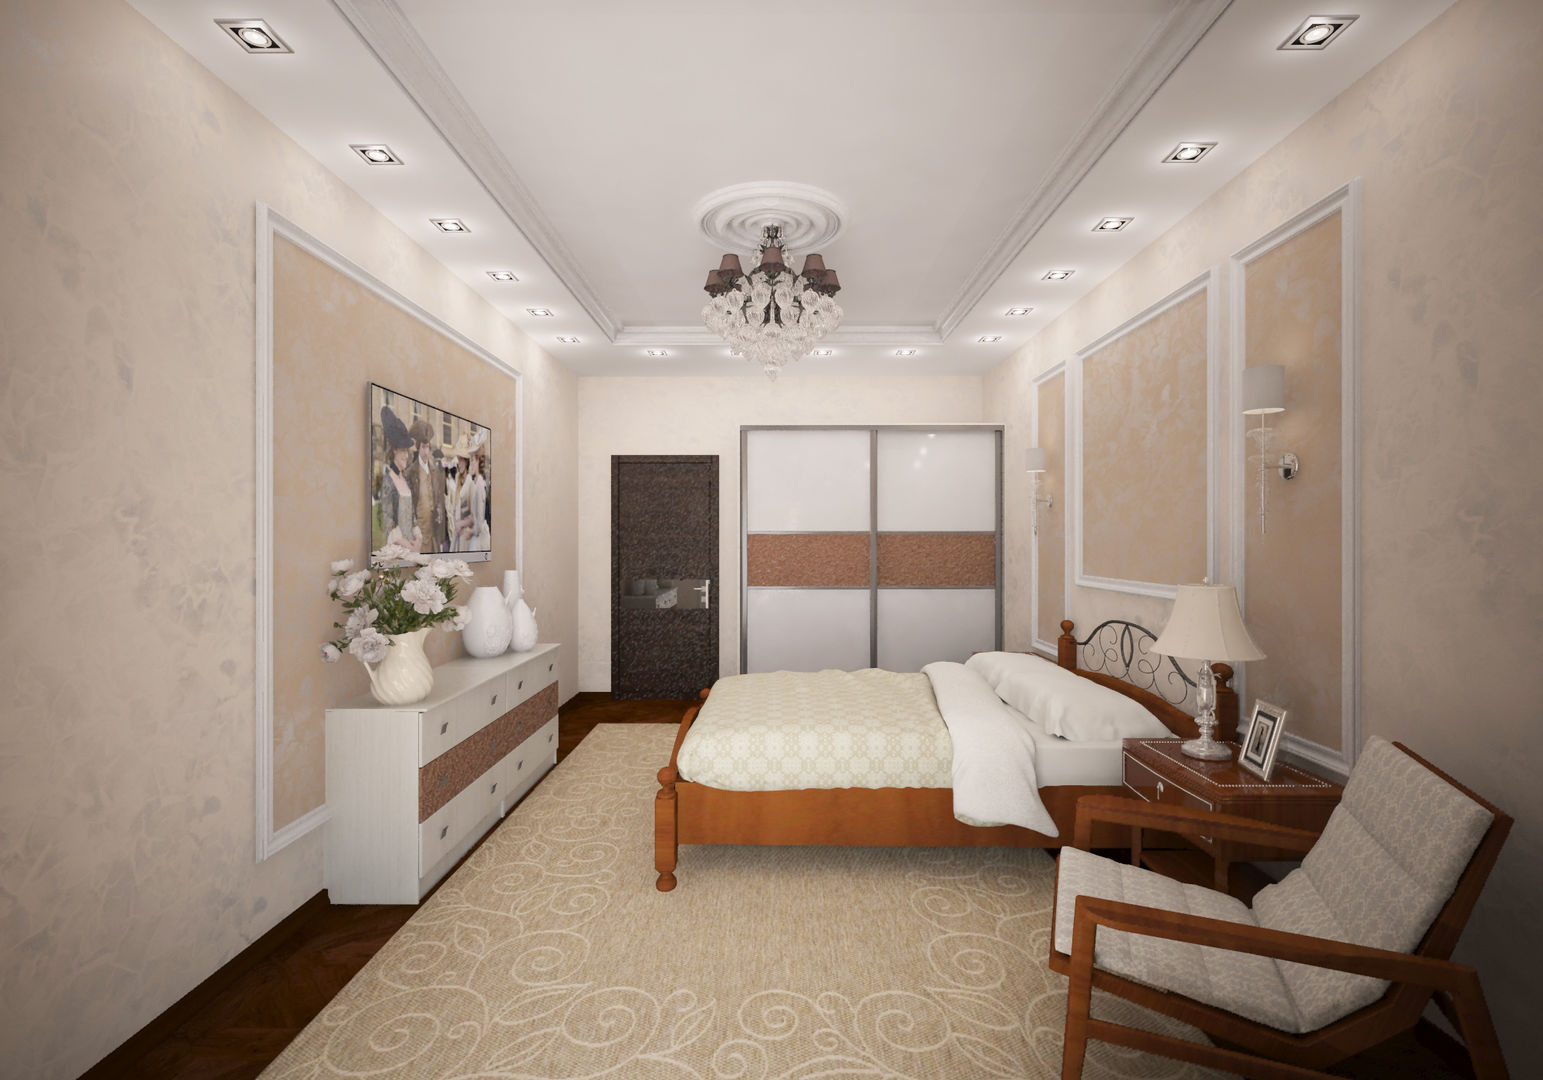 Классическая комната с французским двориком на балконе, Гурьянова Наталья Гурьянова Наталья Mediterranean style bedroom